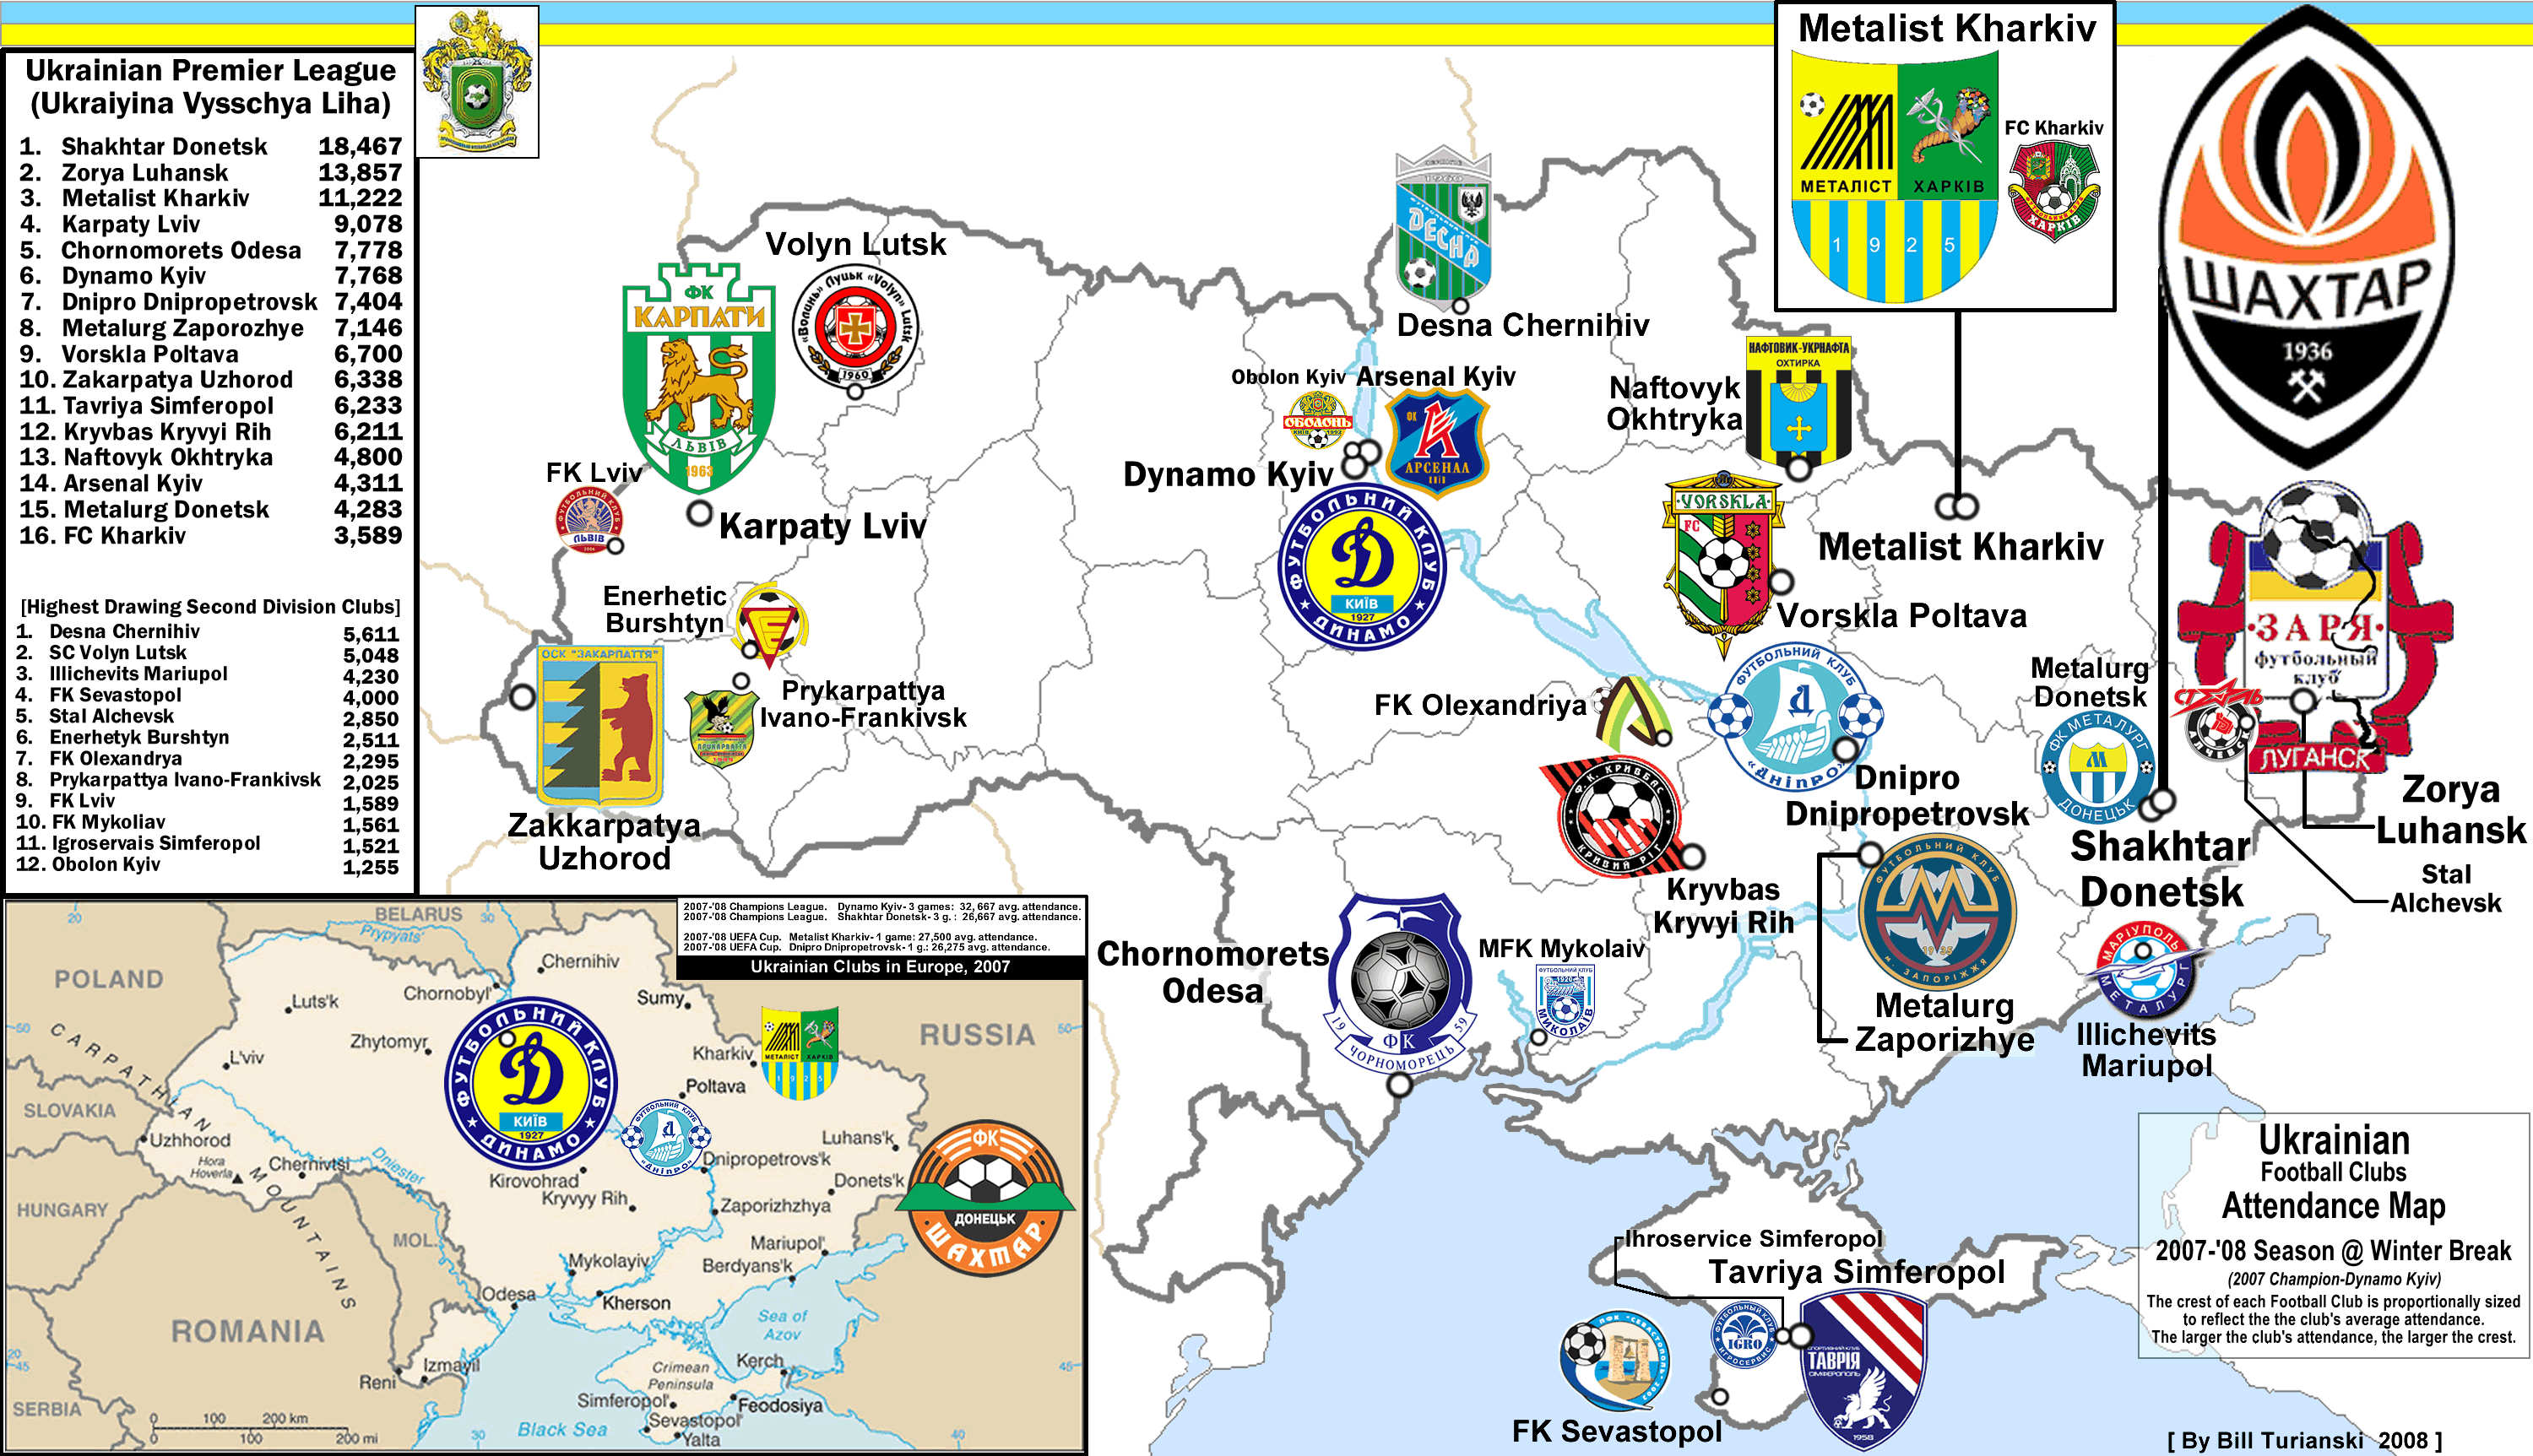 Ukraine Premier League